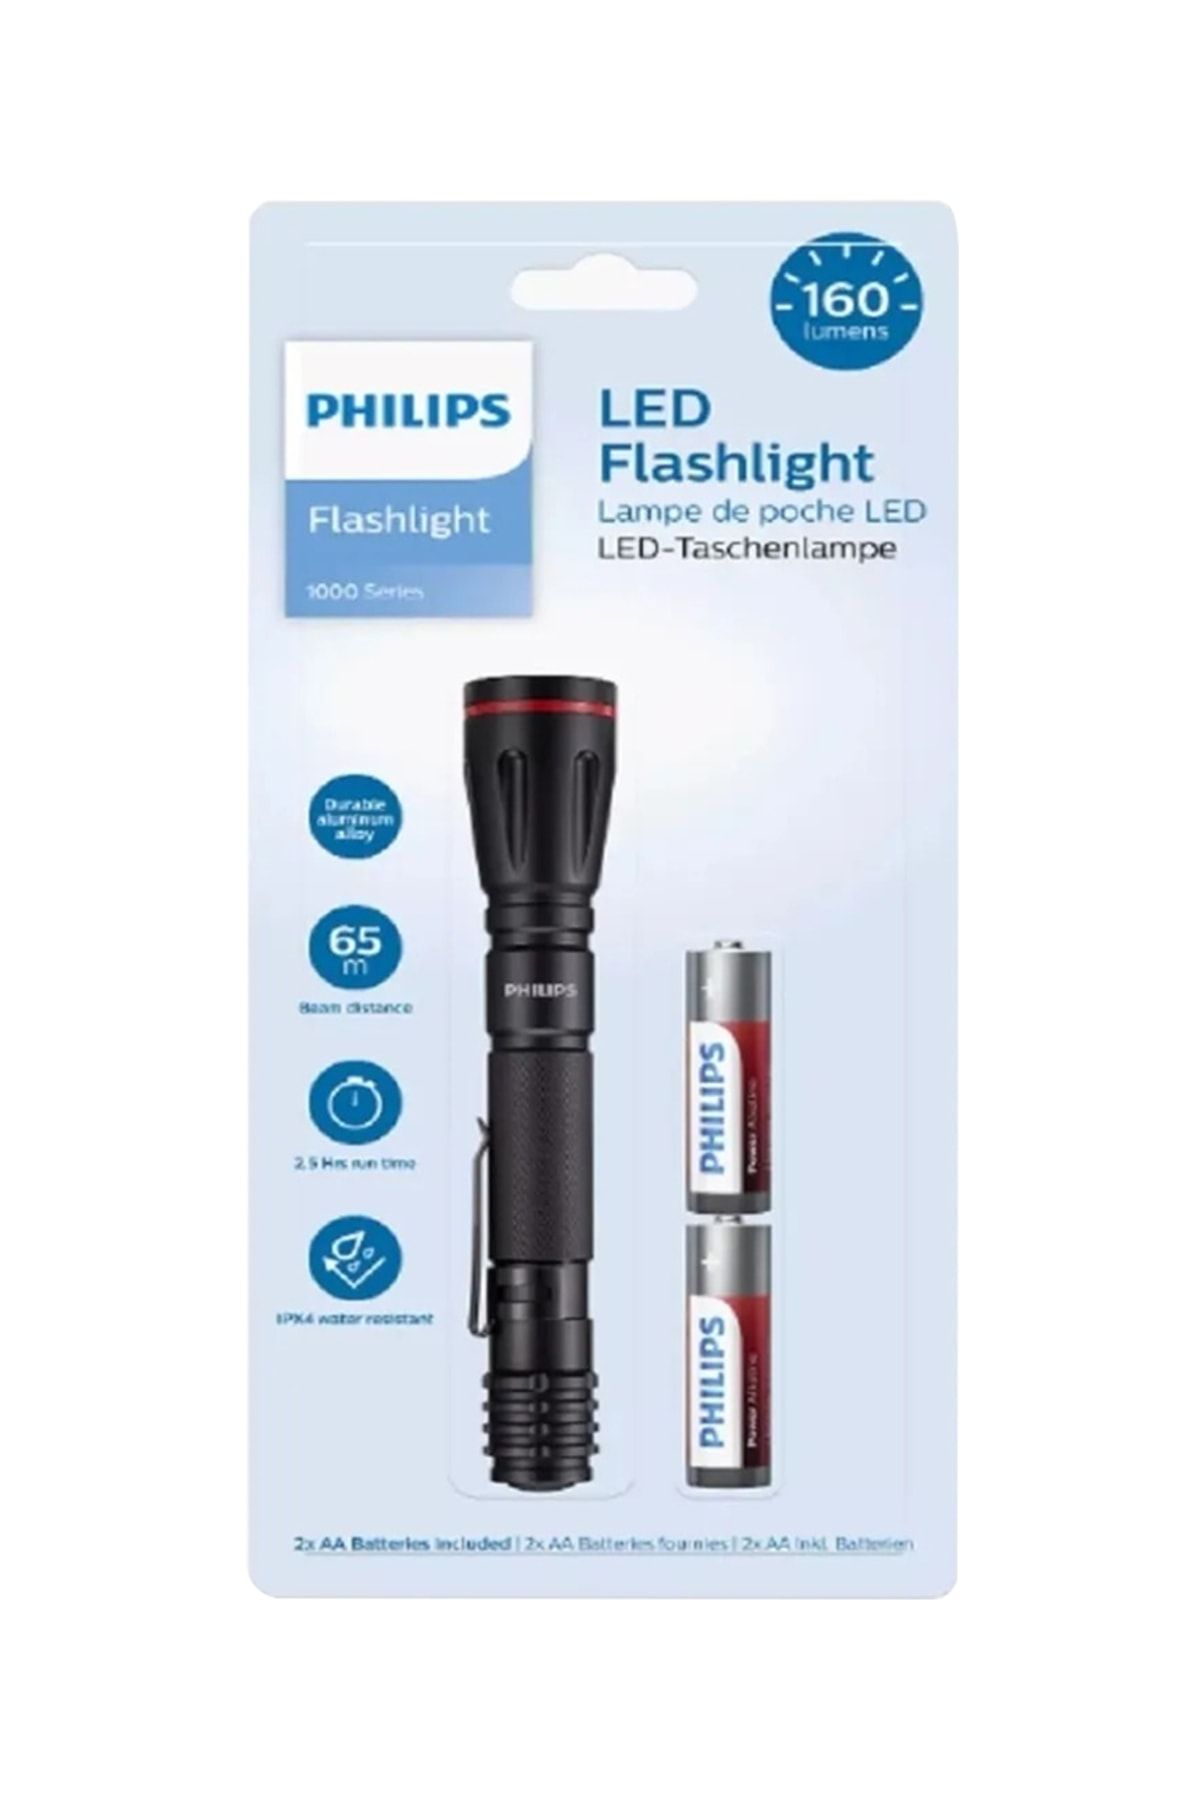 Philips Sfl1001p/10 Led El Feneri 160 Lumen Pilli Ipx4 Suya Dayanıklı